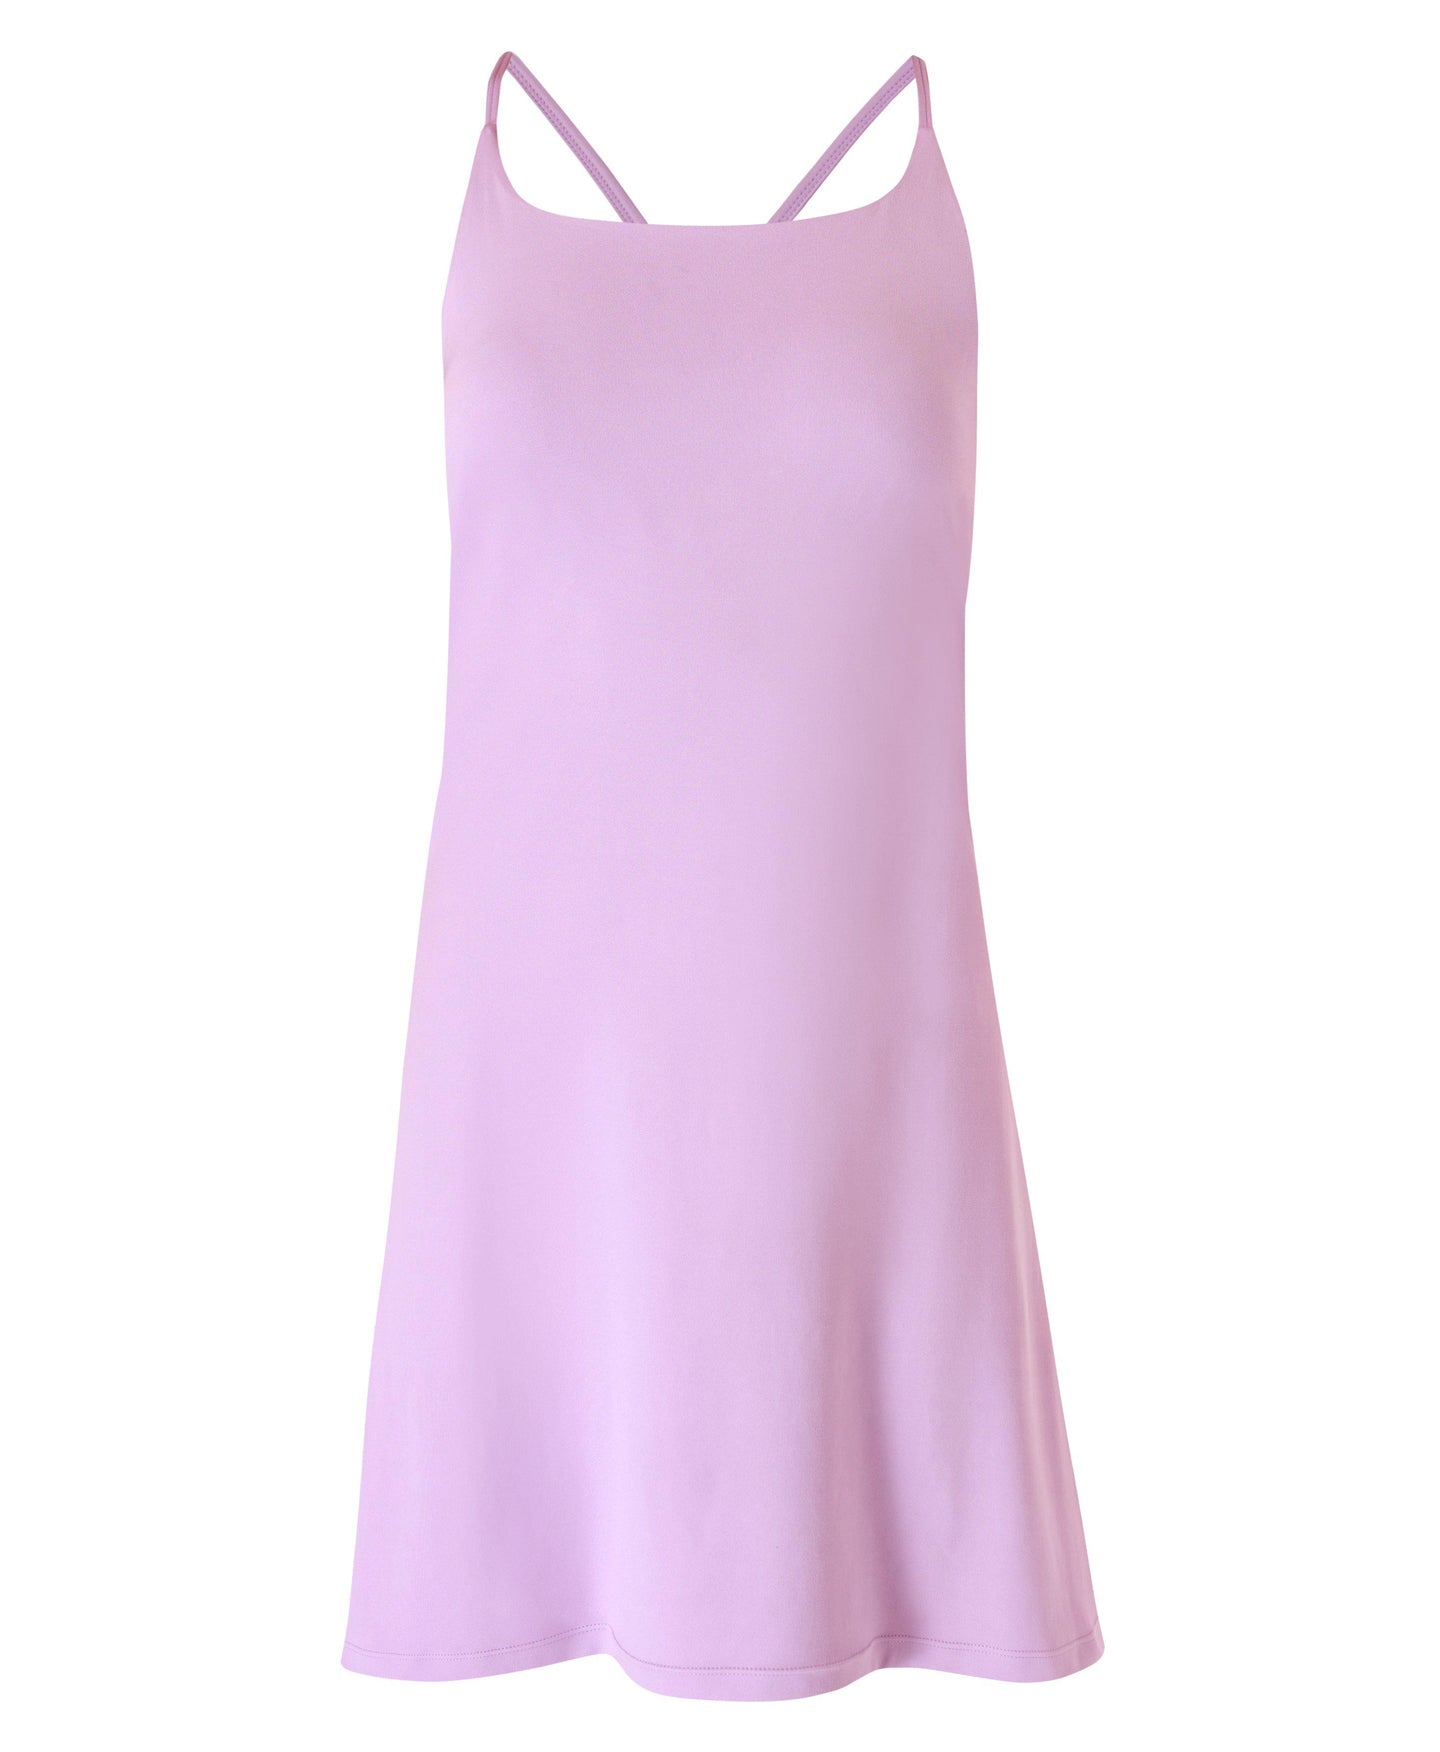 All Round Workout Dress Sb8991 Lily-Purple